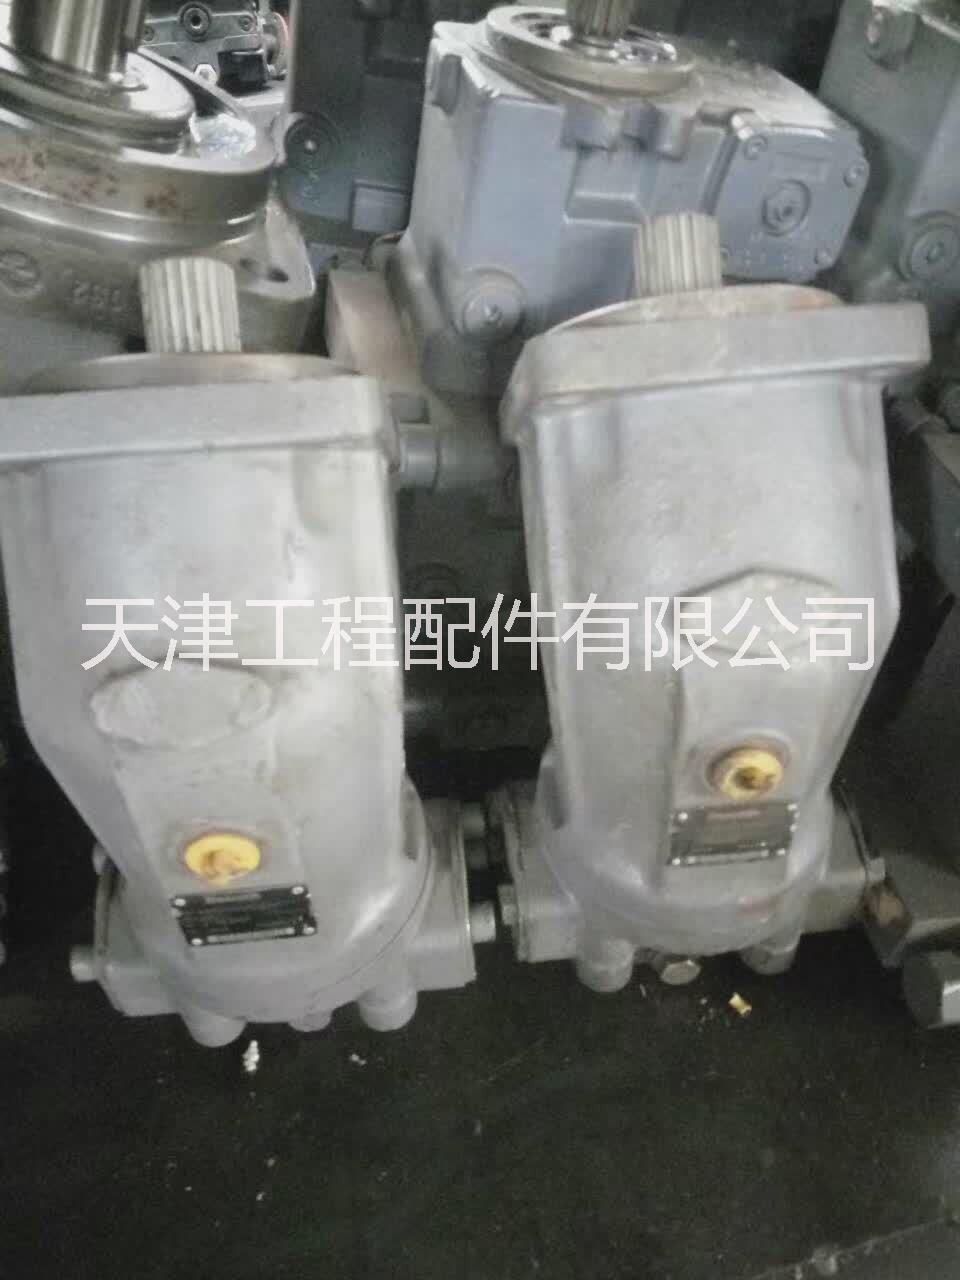 天津机械液压泵公司 天津机械液压配件价格 天津液压泵厂家直销图片